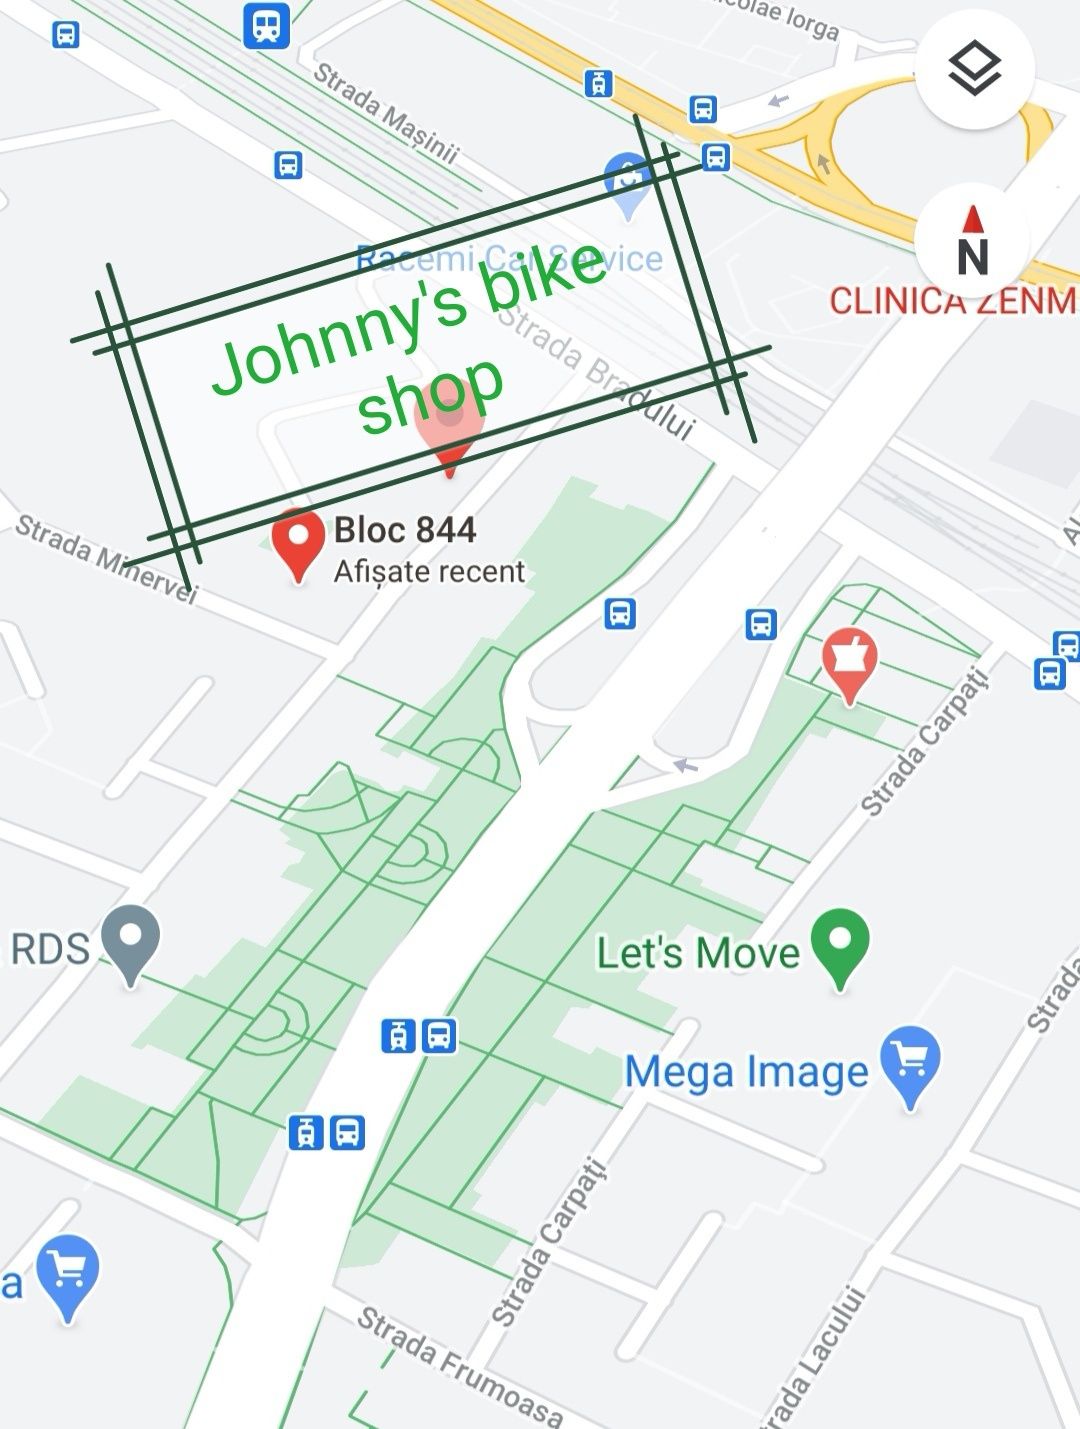 Vânzări biciclete noi -Johnny s bike shop